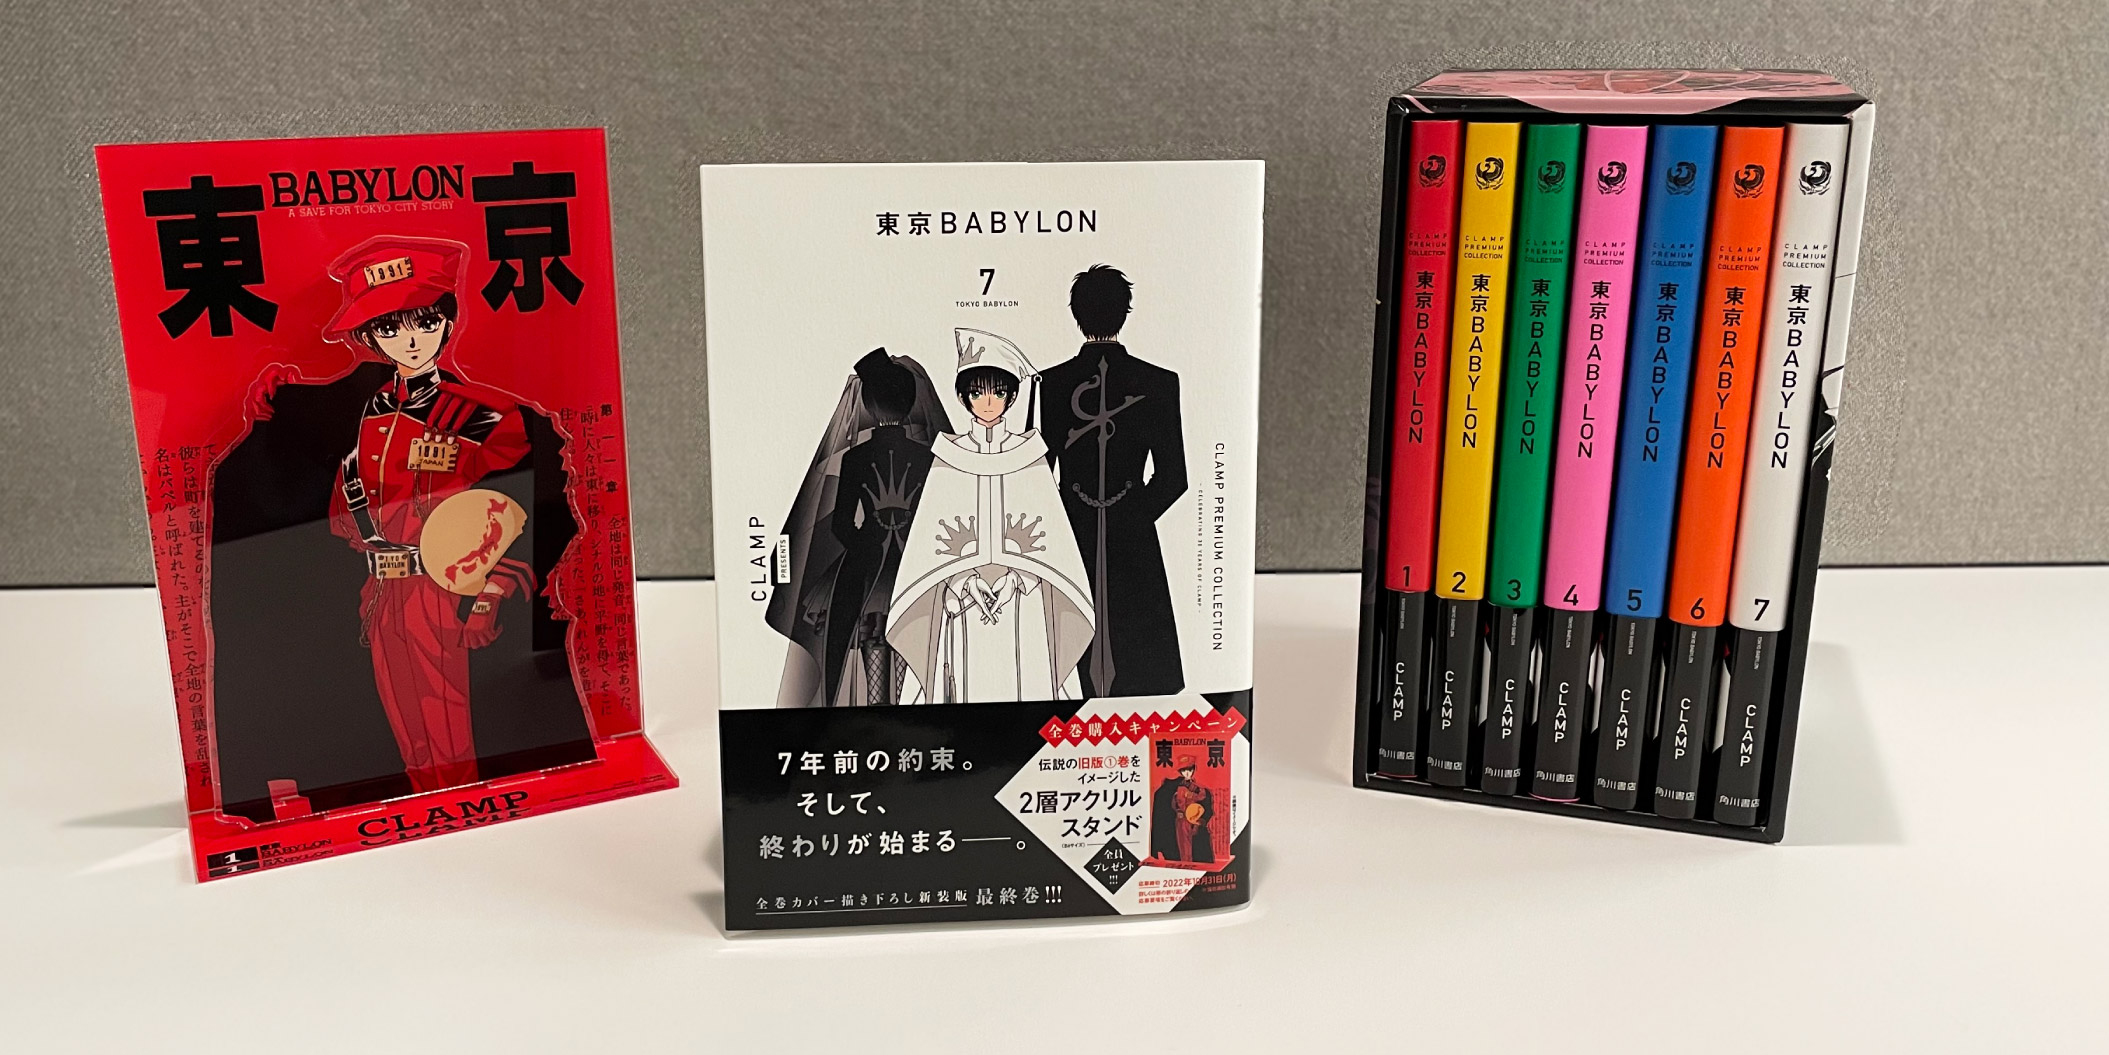 CLAMP PREMIUM COLLECTION「東京BABYLON」7巻は9/2発売。 | clamp-net.com